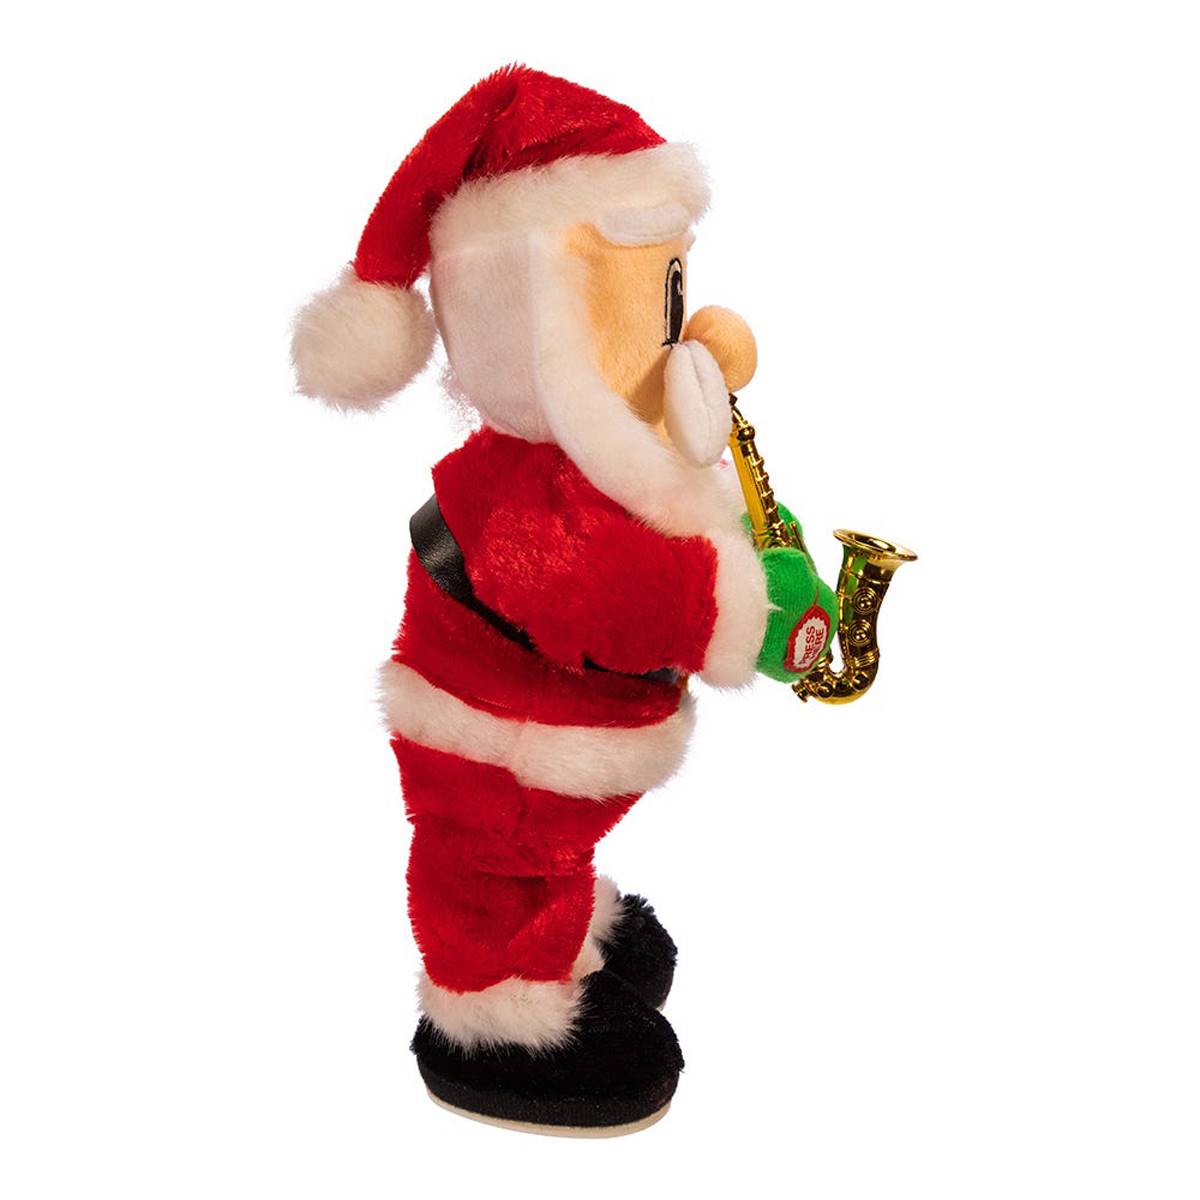 Kurt S. Adler 14in. Battery-Operated Dancing Jazz Santa